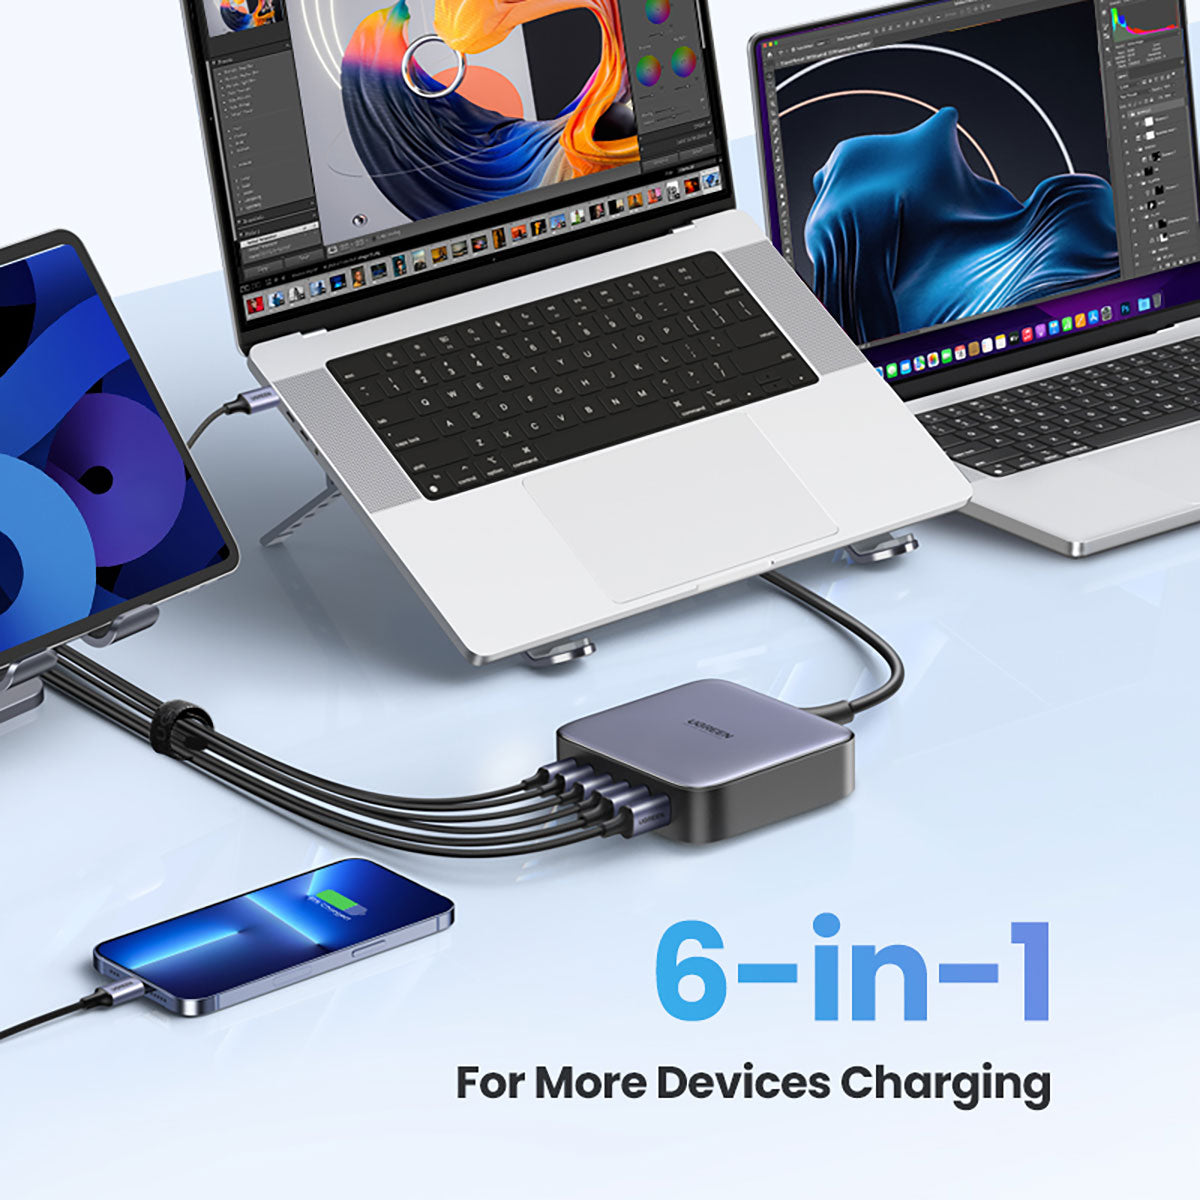 UGREEN GaN 200W Desktop USB Charger (6-Ports) 桌上型USB充電器 充電器 Microworks Online Store